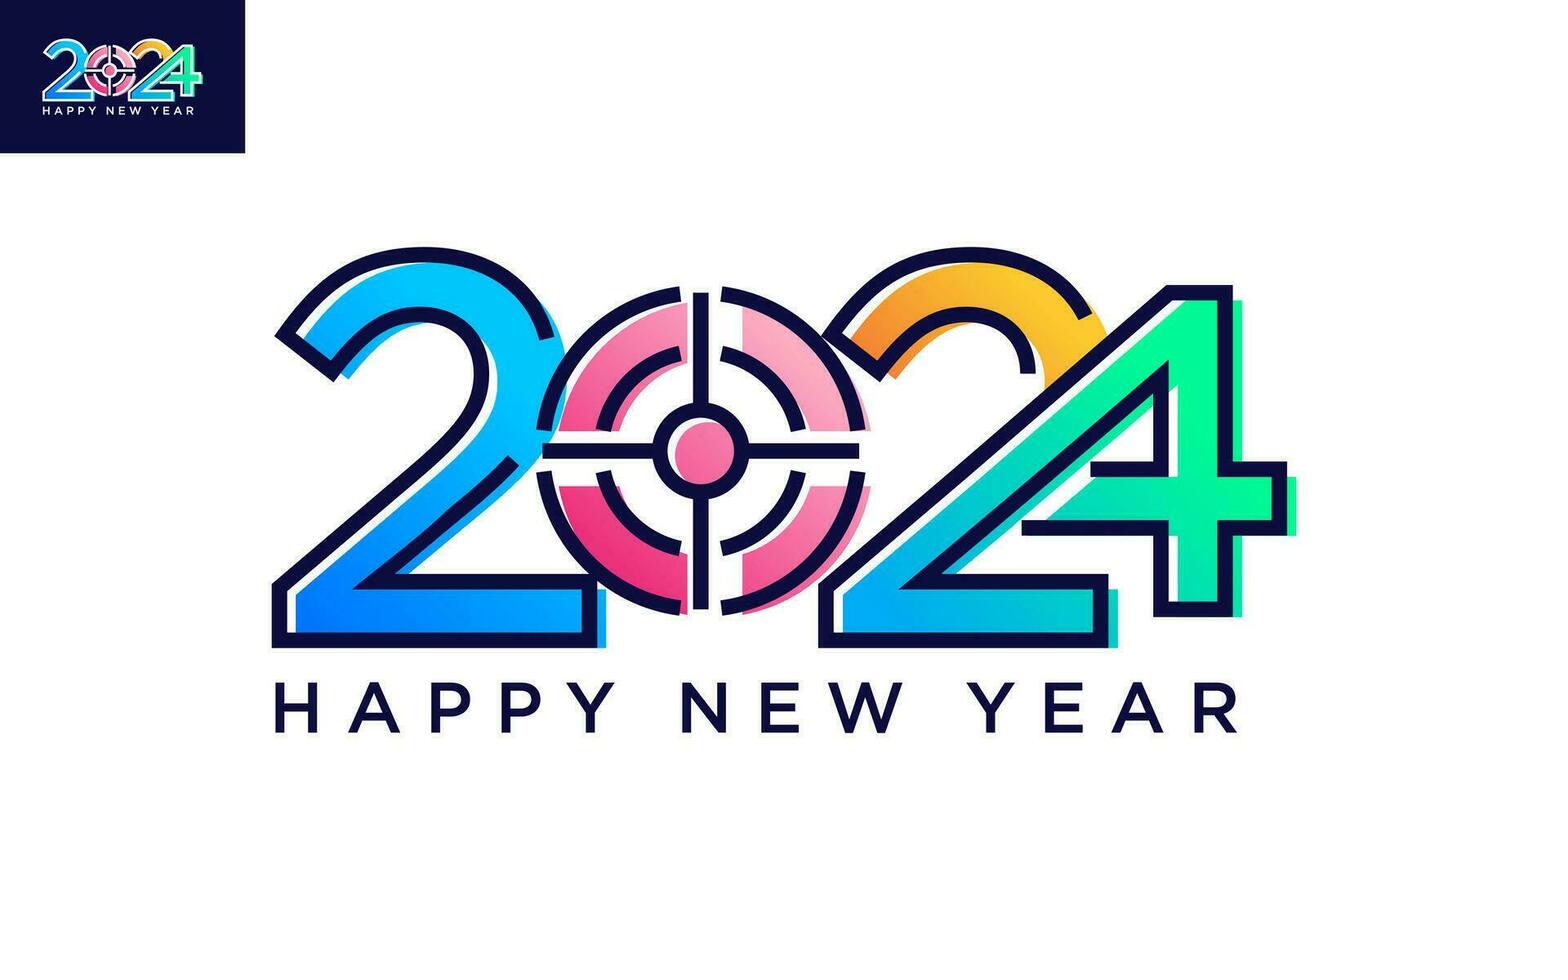 moderno vector gráfico de 2024 logo contento nuevo año, texto 2024 modelo vector editable y redimensionable eps 10